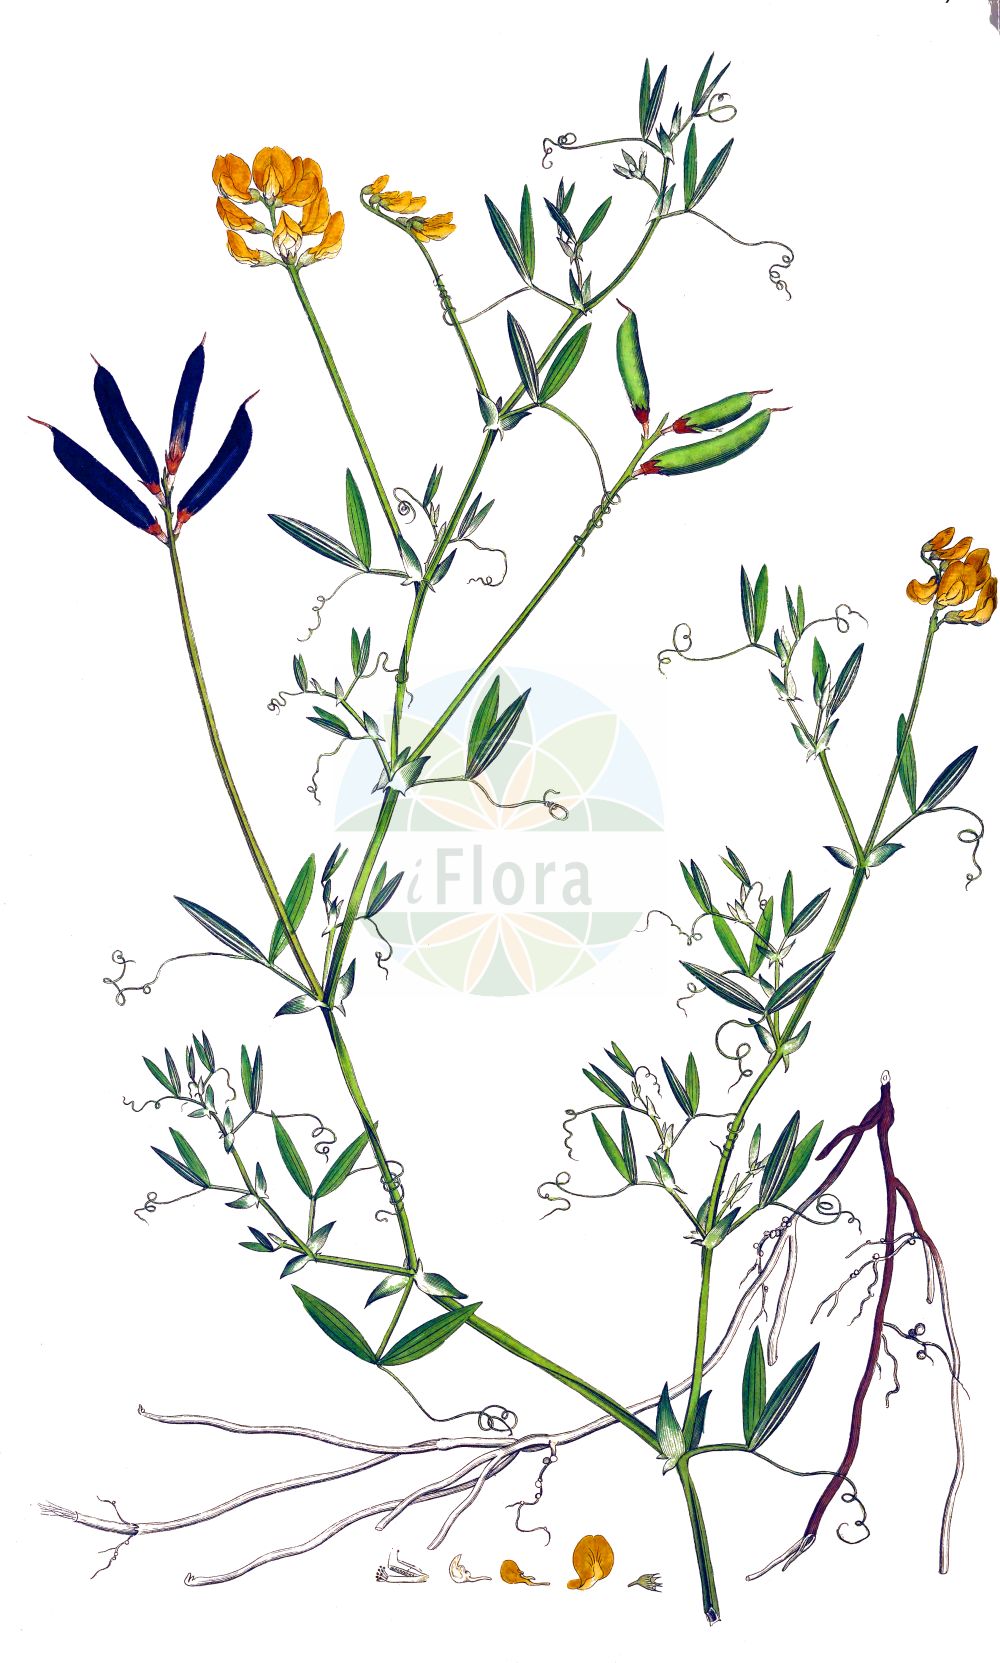 Historische Abbildung von Lathyrus pratensis (Wiesen-Platterbse - Meadow Vetchling). Das Bild zeigt Blatt, Bluete, Frucht und Same. ---- Historical Drawing of Lathyrus pratensis (Wiesen-Platterbse - Meadow Vetchling). The image is showing leaf, flower, fruit and seed.(Lathyrus pratensis,Wiesen-Platterbse,Meadow Vetchling,Lathyrus pratensis,Orobus pratensis,Wiesen-Platterbse,Meadow Vetchling,Meadow Pea Vine,Meadow Pea,Yellow Vetchling,Lathyrus,Platterbse,Pea,Fabaceae,Schmetterlingsblütler,Pea family,Blatt,Bluete,Frucht,Same,leaf,flower,fruit,seed,Curtis (1777-1798))